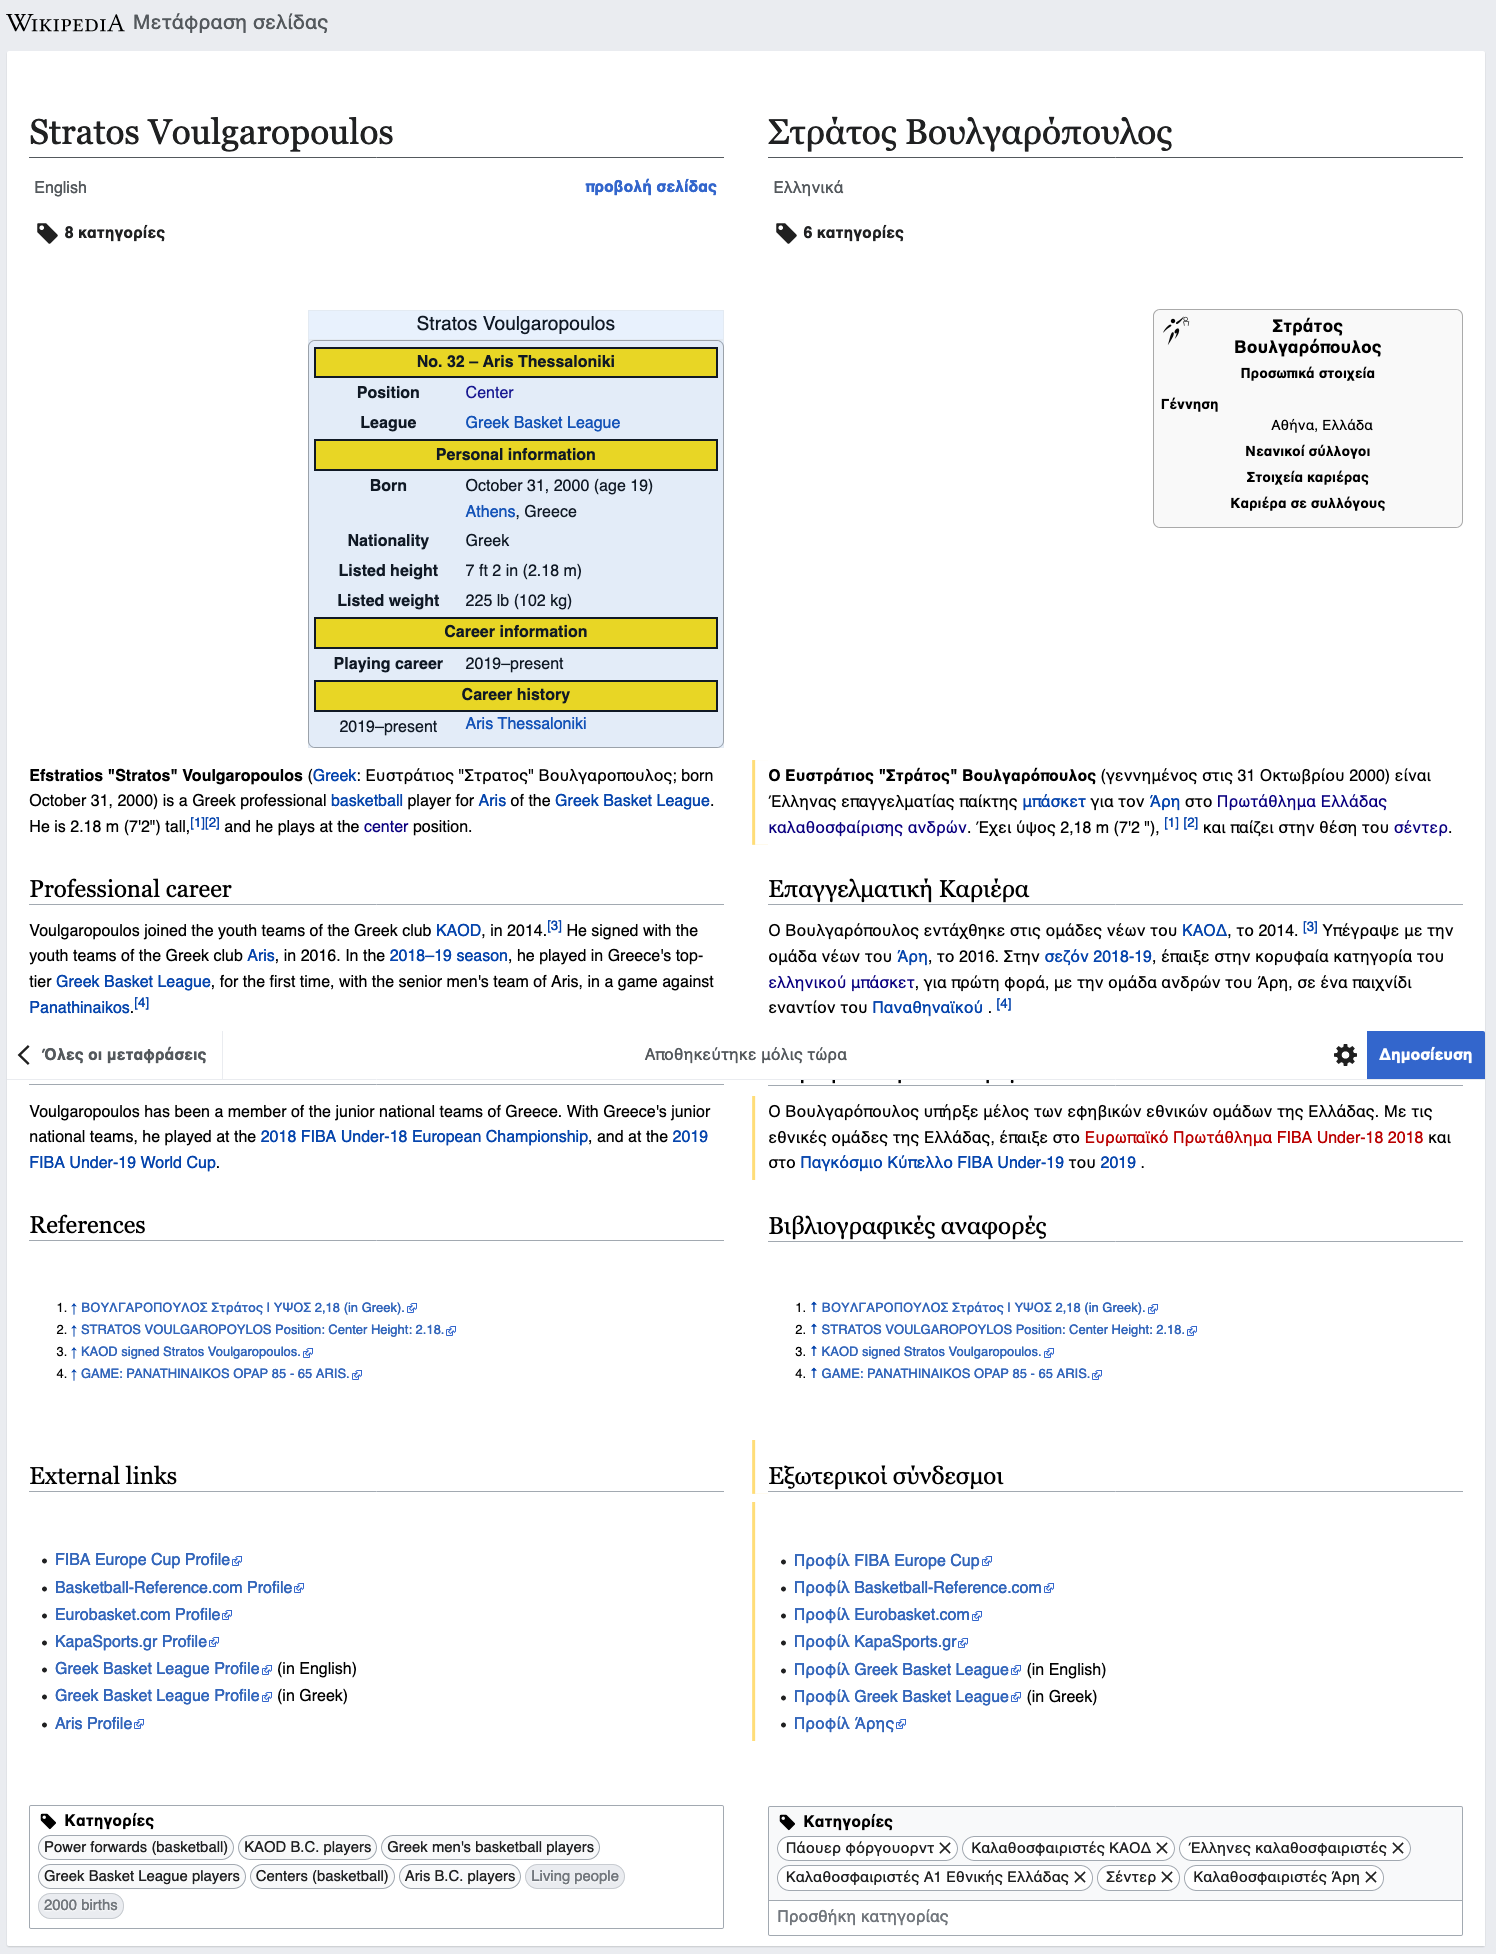 Screenshot_2020-05-13 Μετάφραση σελίδας - Βικιπαίδεια.png (1×1 px, 376 KB)